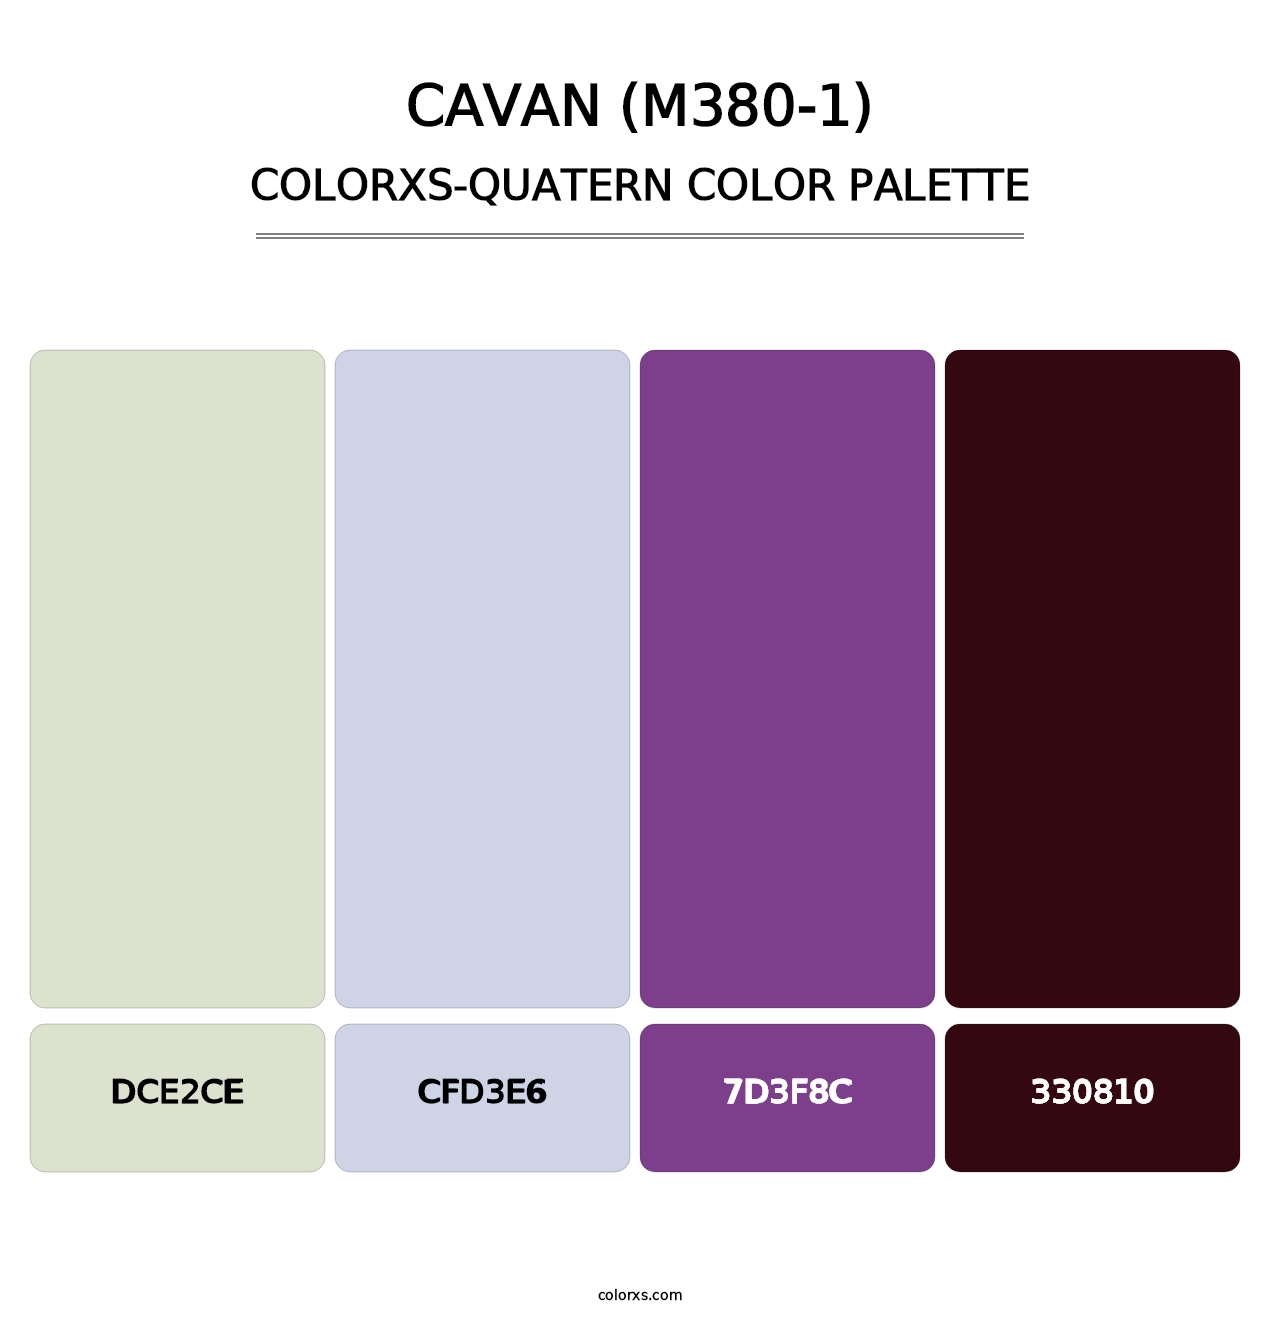 Cavan (M380-1) - Colorxs Quatern Palette